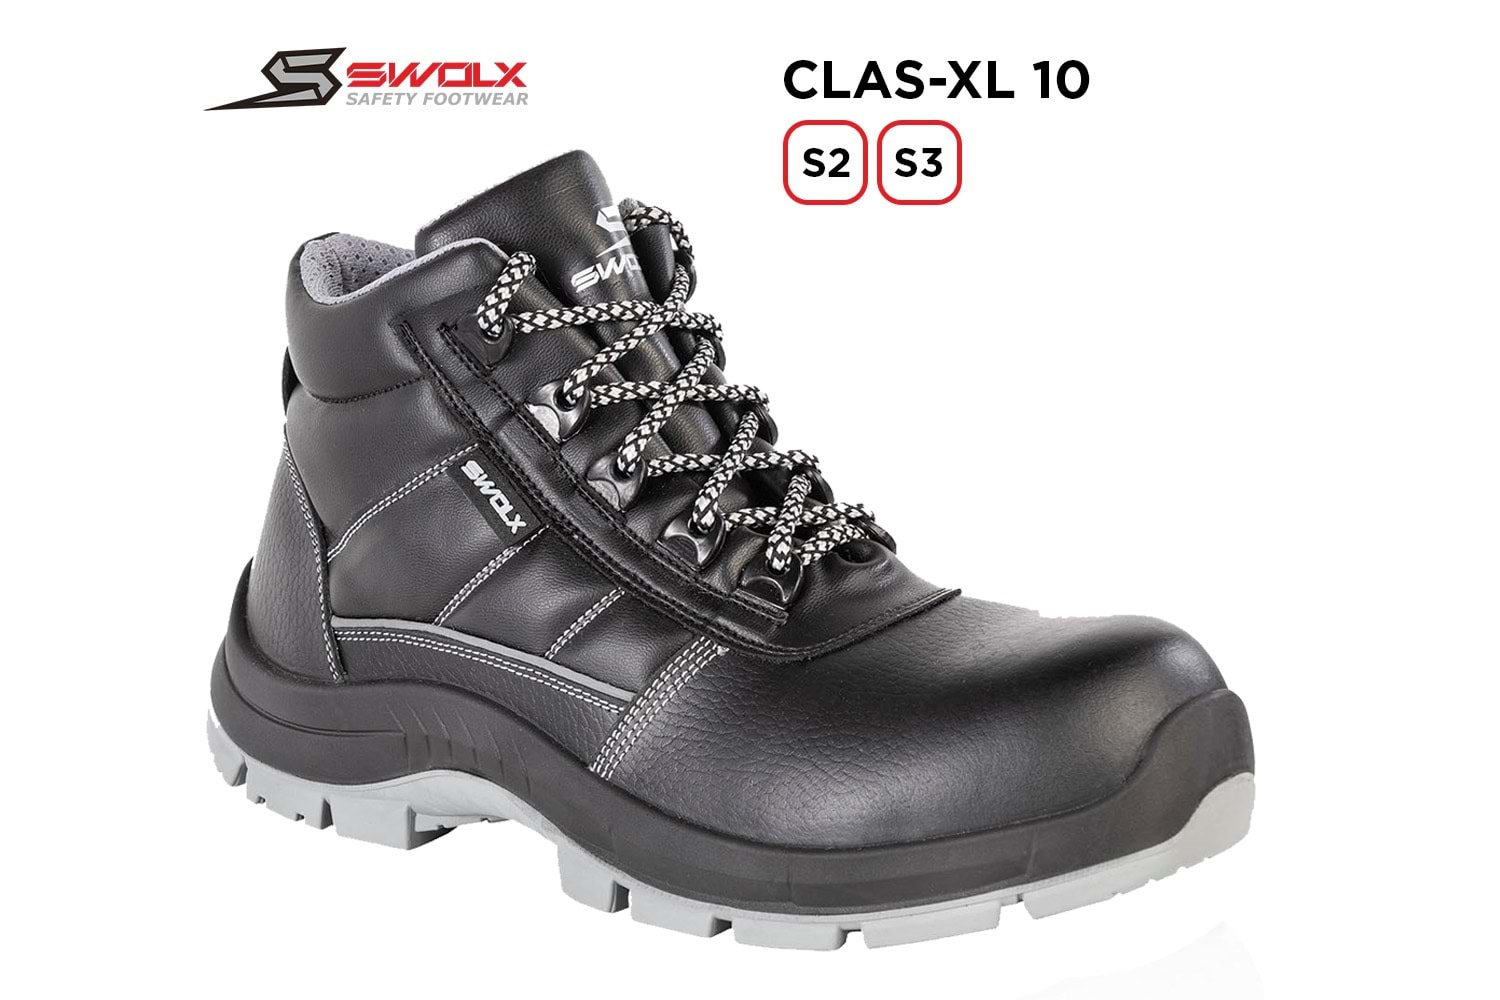 Swolx İş Ayakkabısı - Clas-Xl 10 S3 - 43